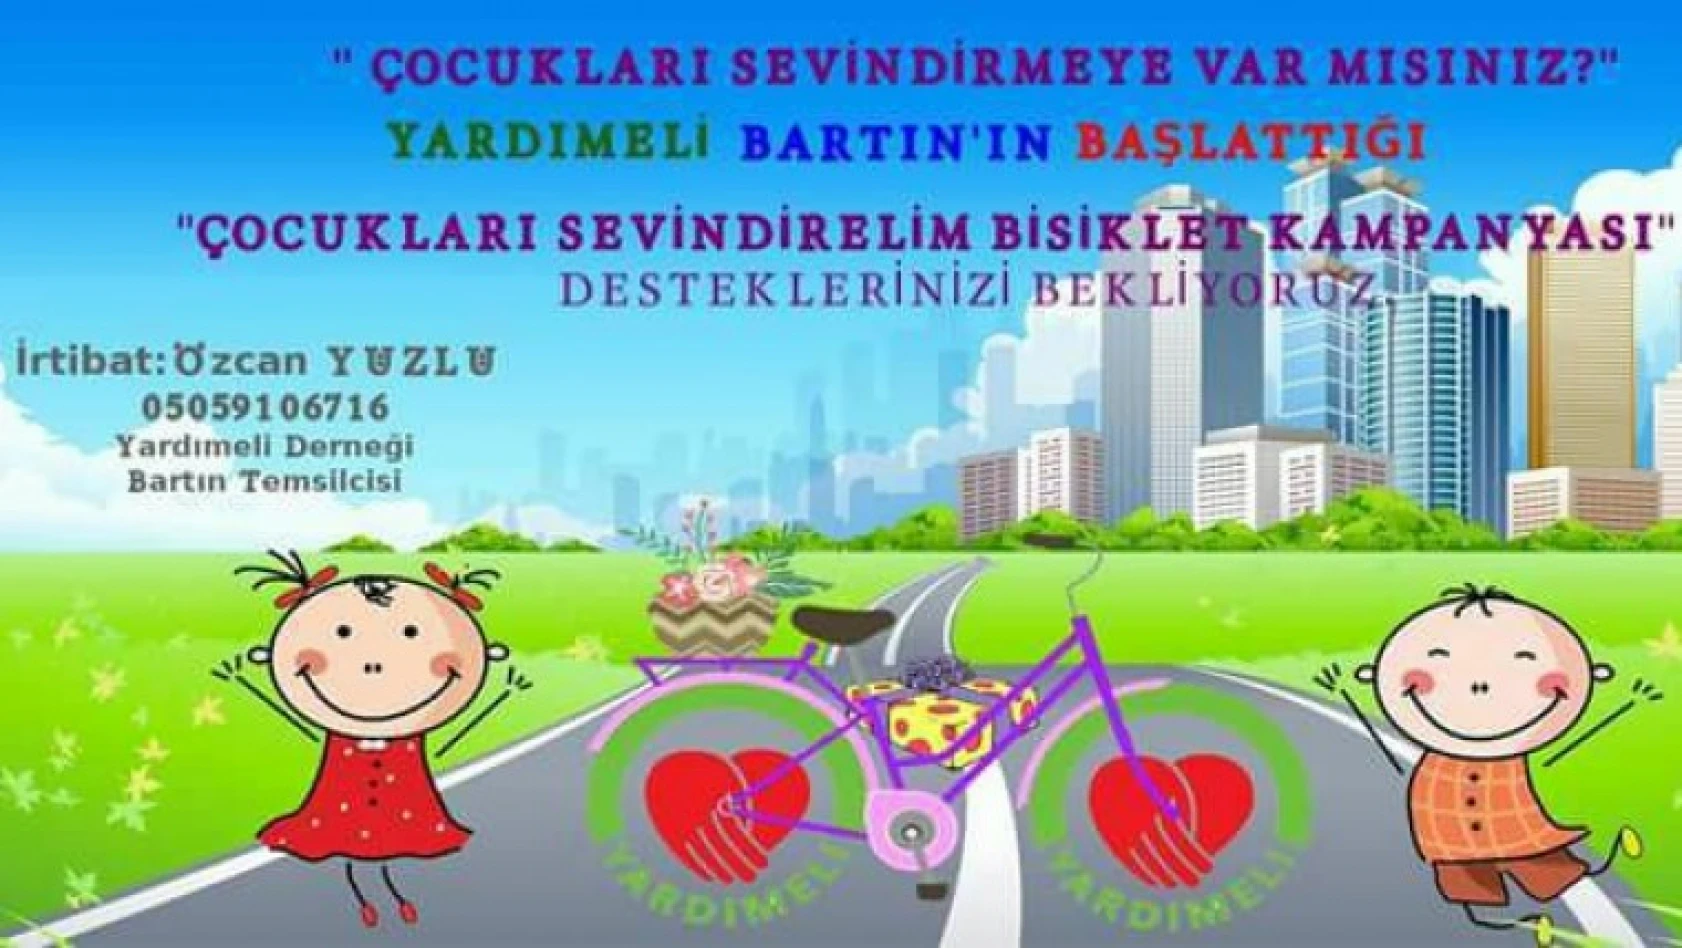 Dernekten çocuklar için bisiklet kampanyası!